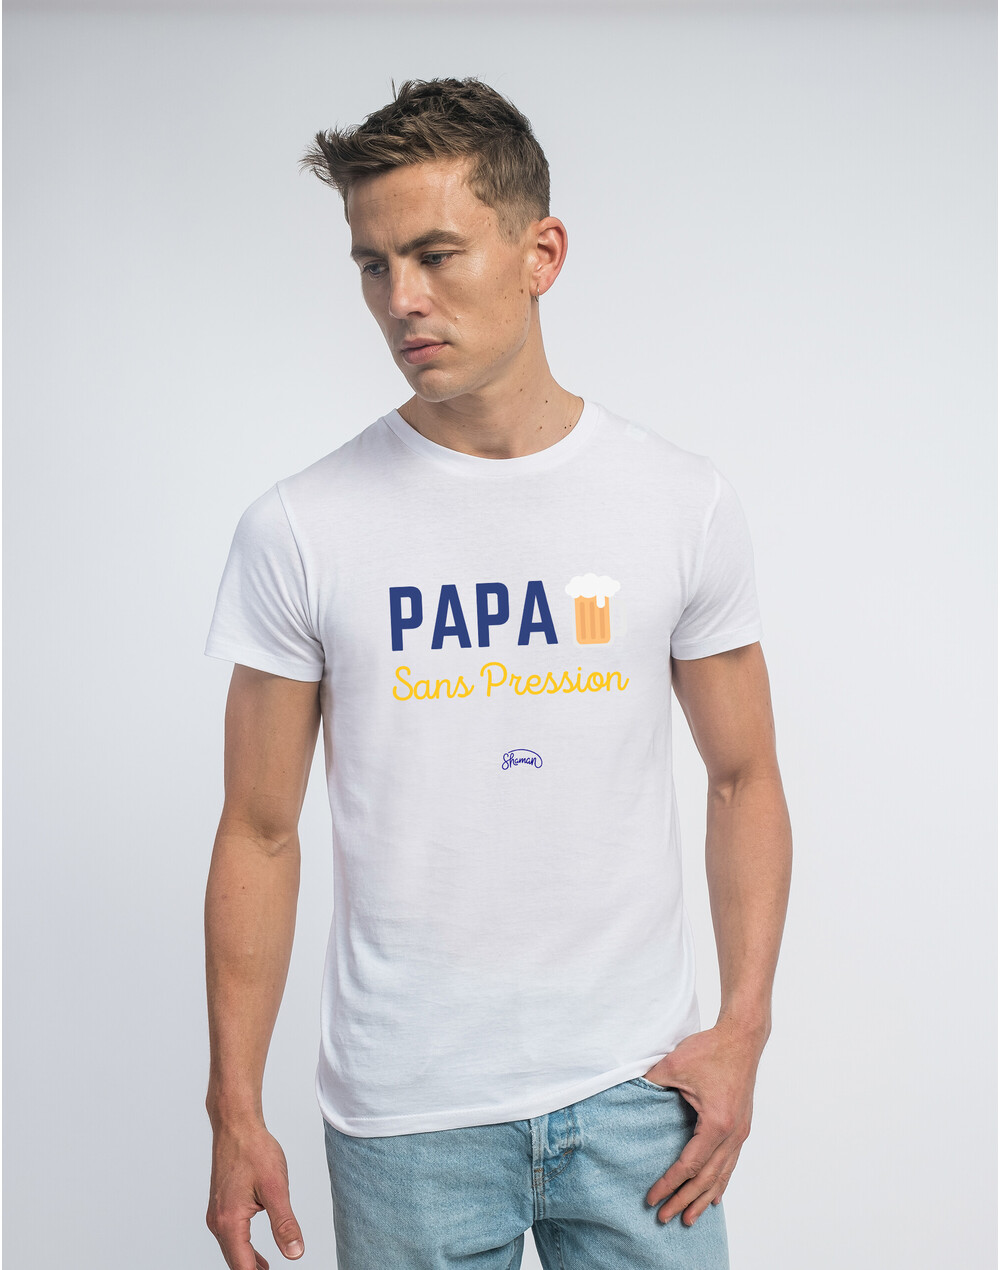 Tshirt PAPA SANS PRESSION